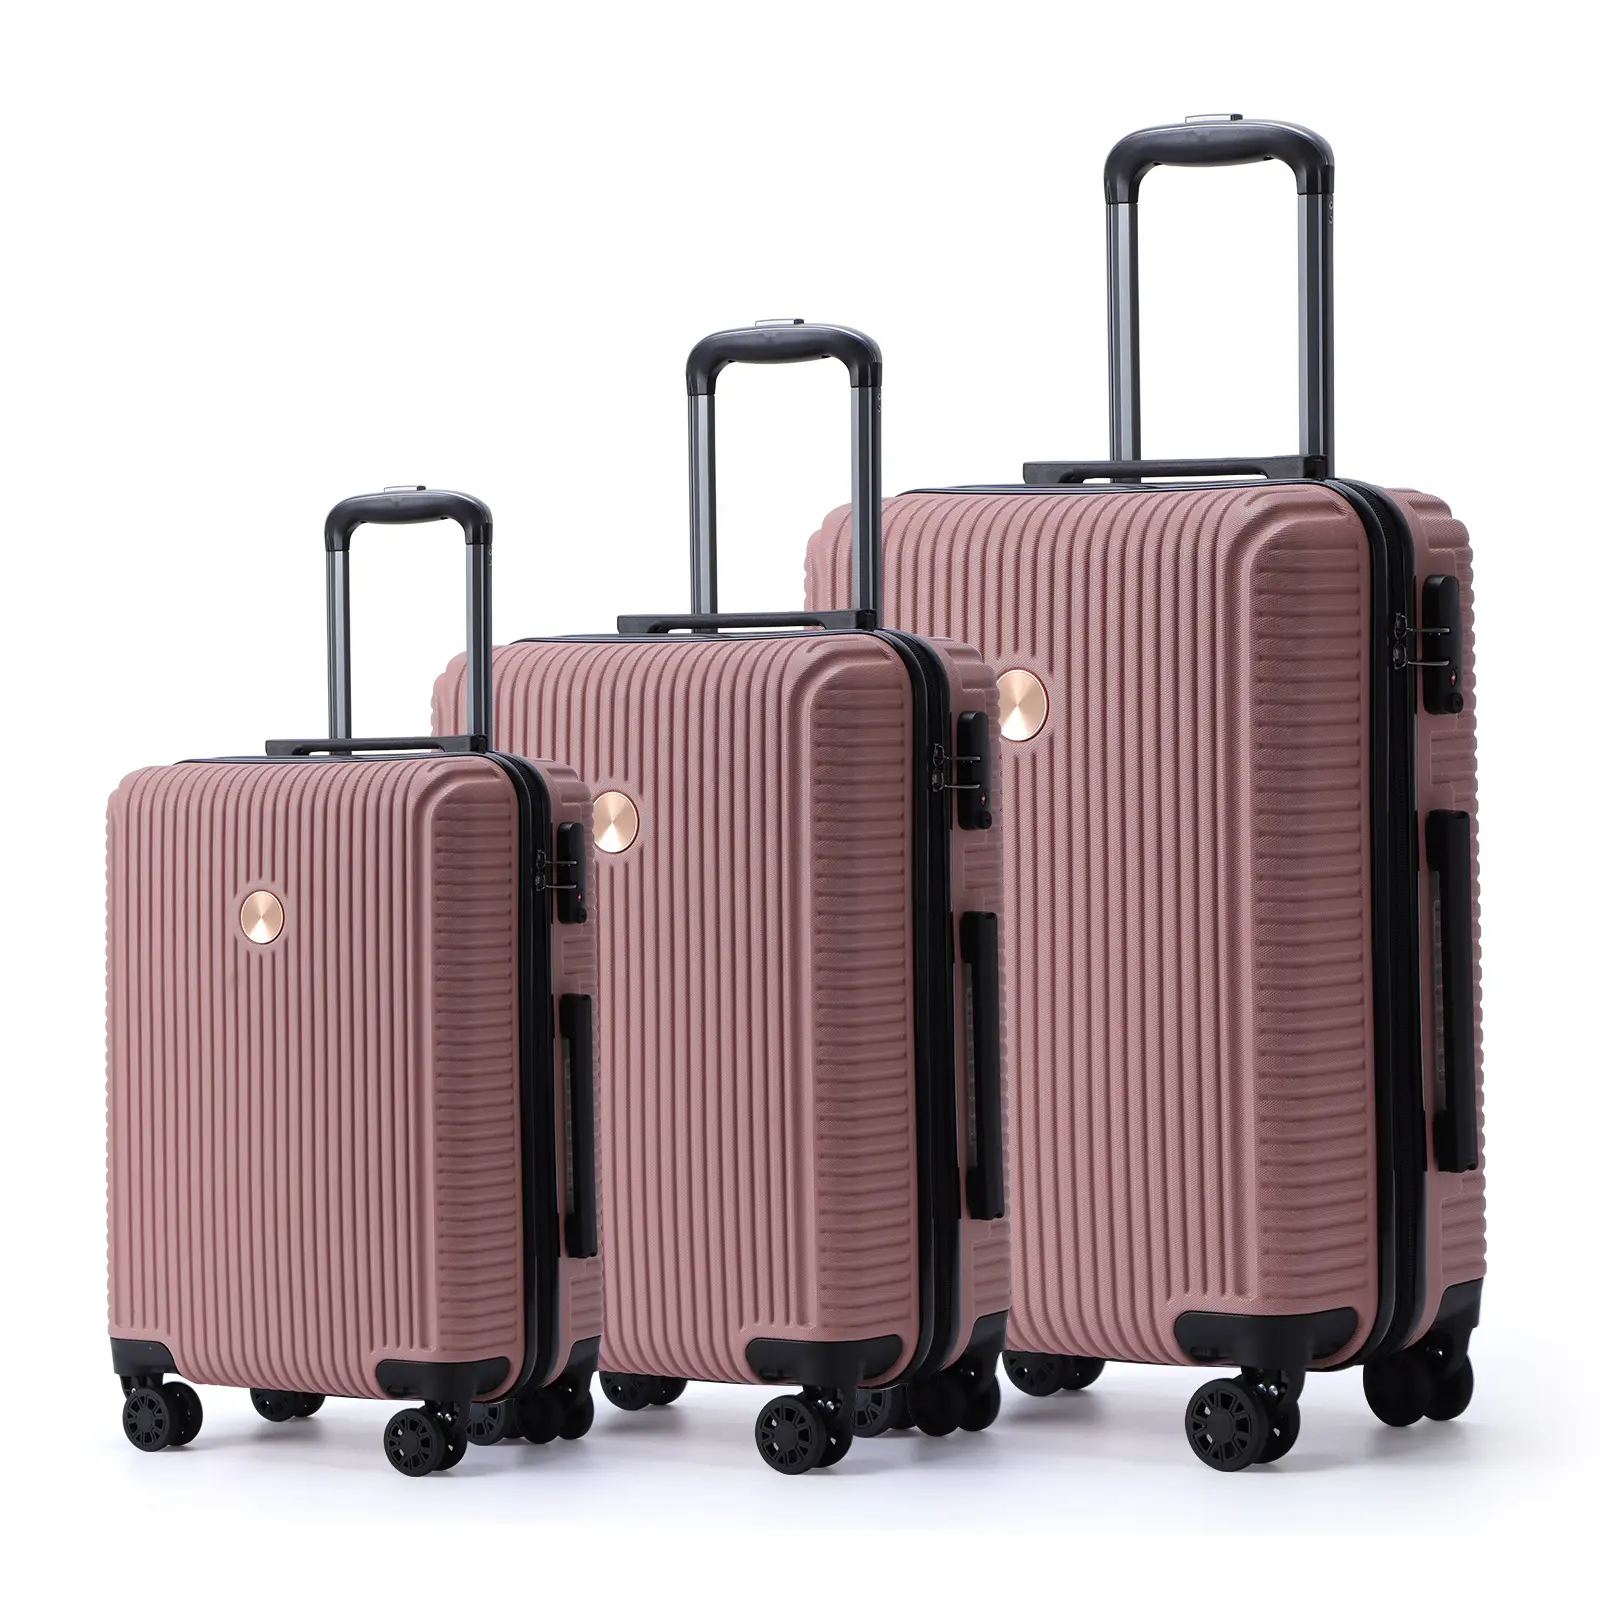 Оптовая продажа, американские чемоданы на колесиках из твердого АБС-пластика для путешествий, чемоданы, наборы чемоданов с замком Tsa